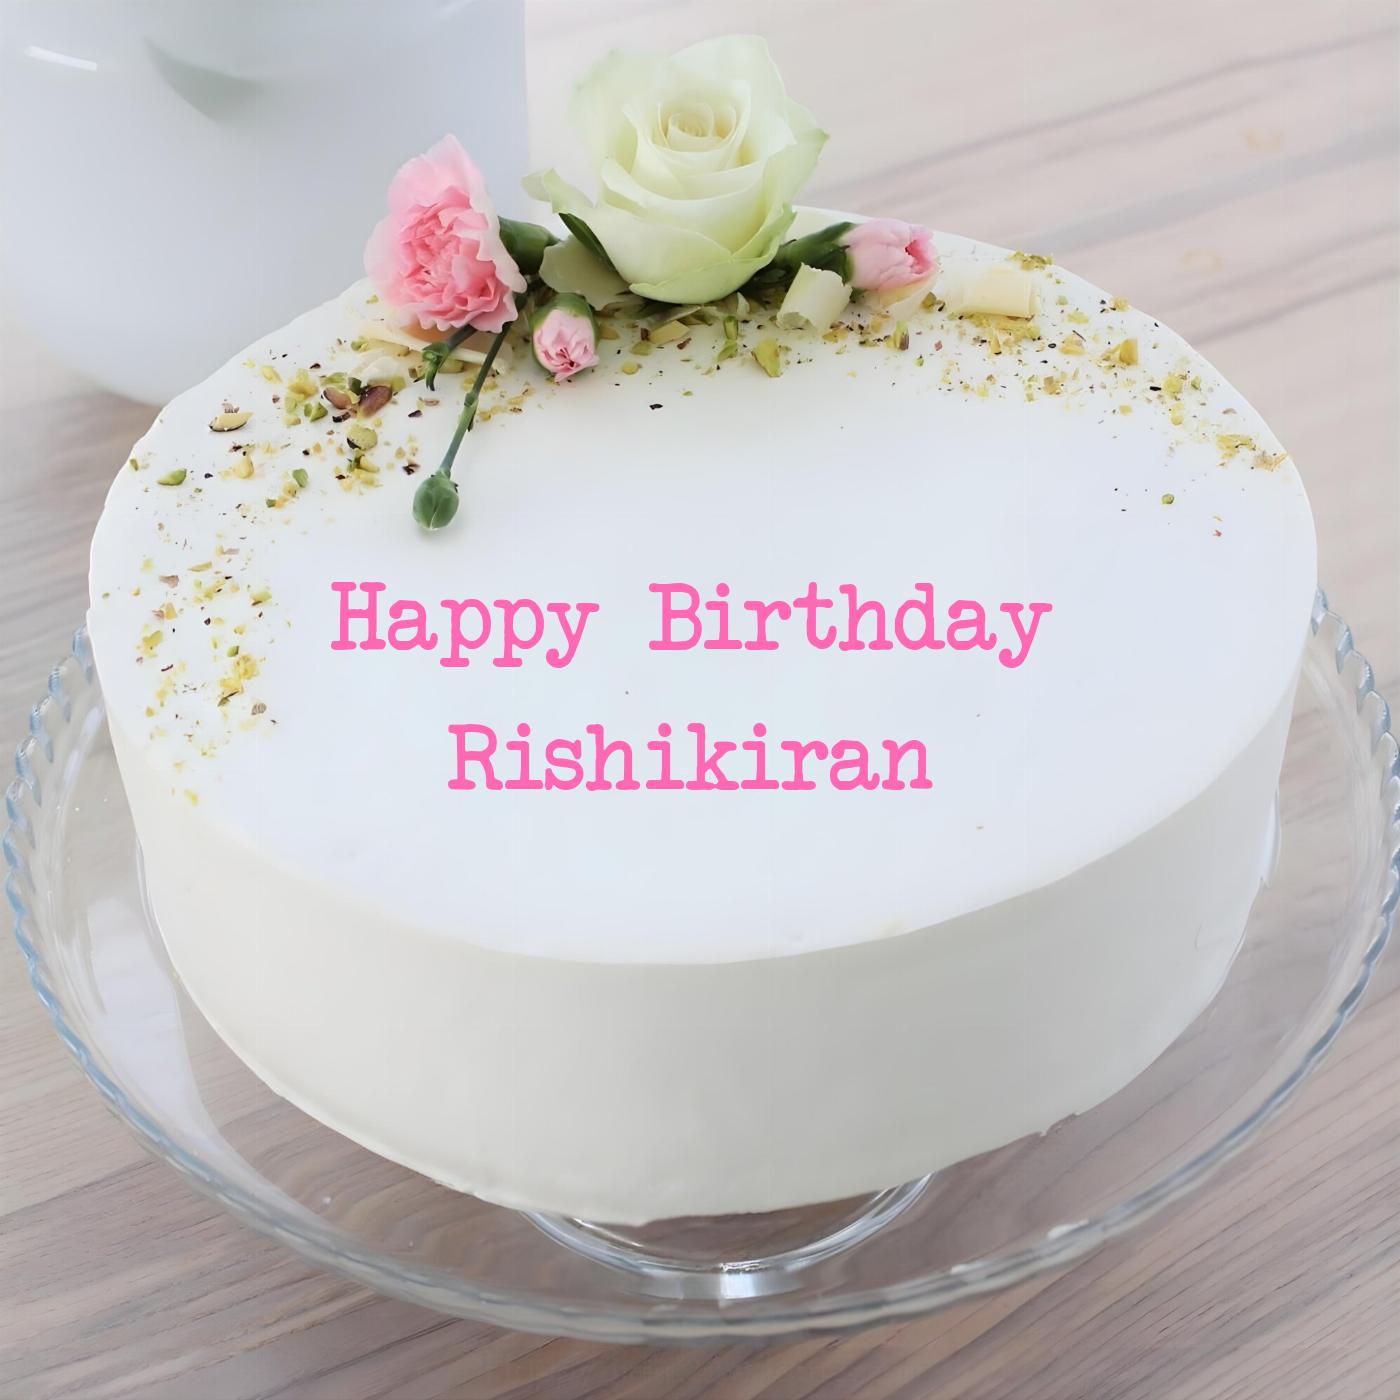 Happy Birthday Rishikiran White Pink Roses Cake